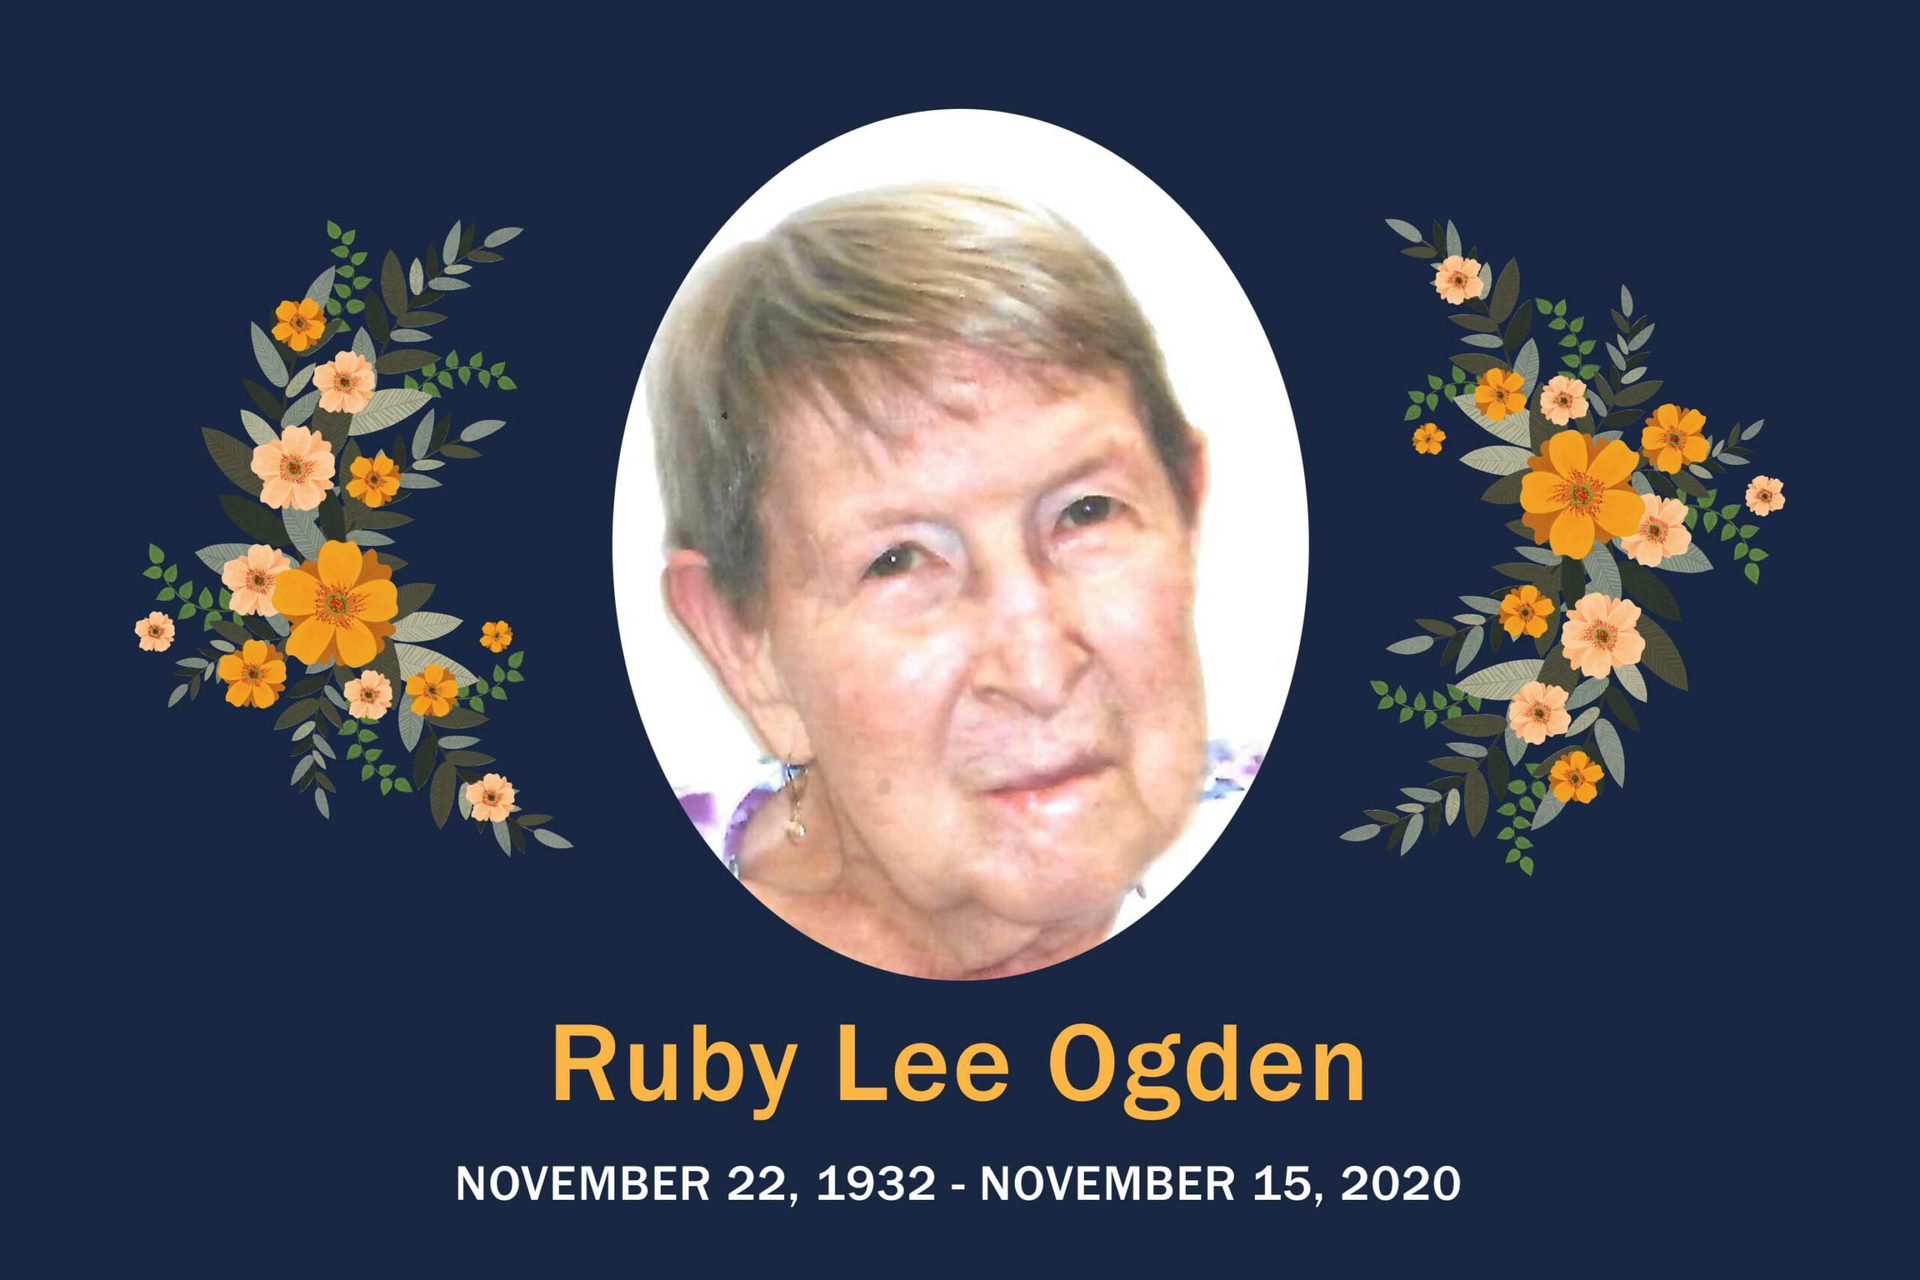 Obituary Ruby Ogden